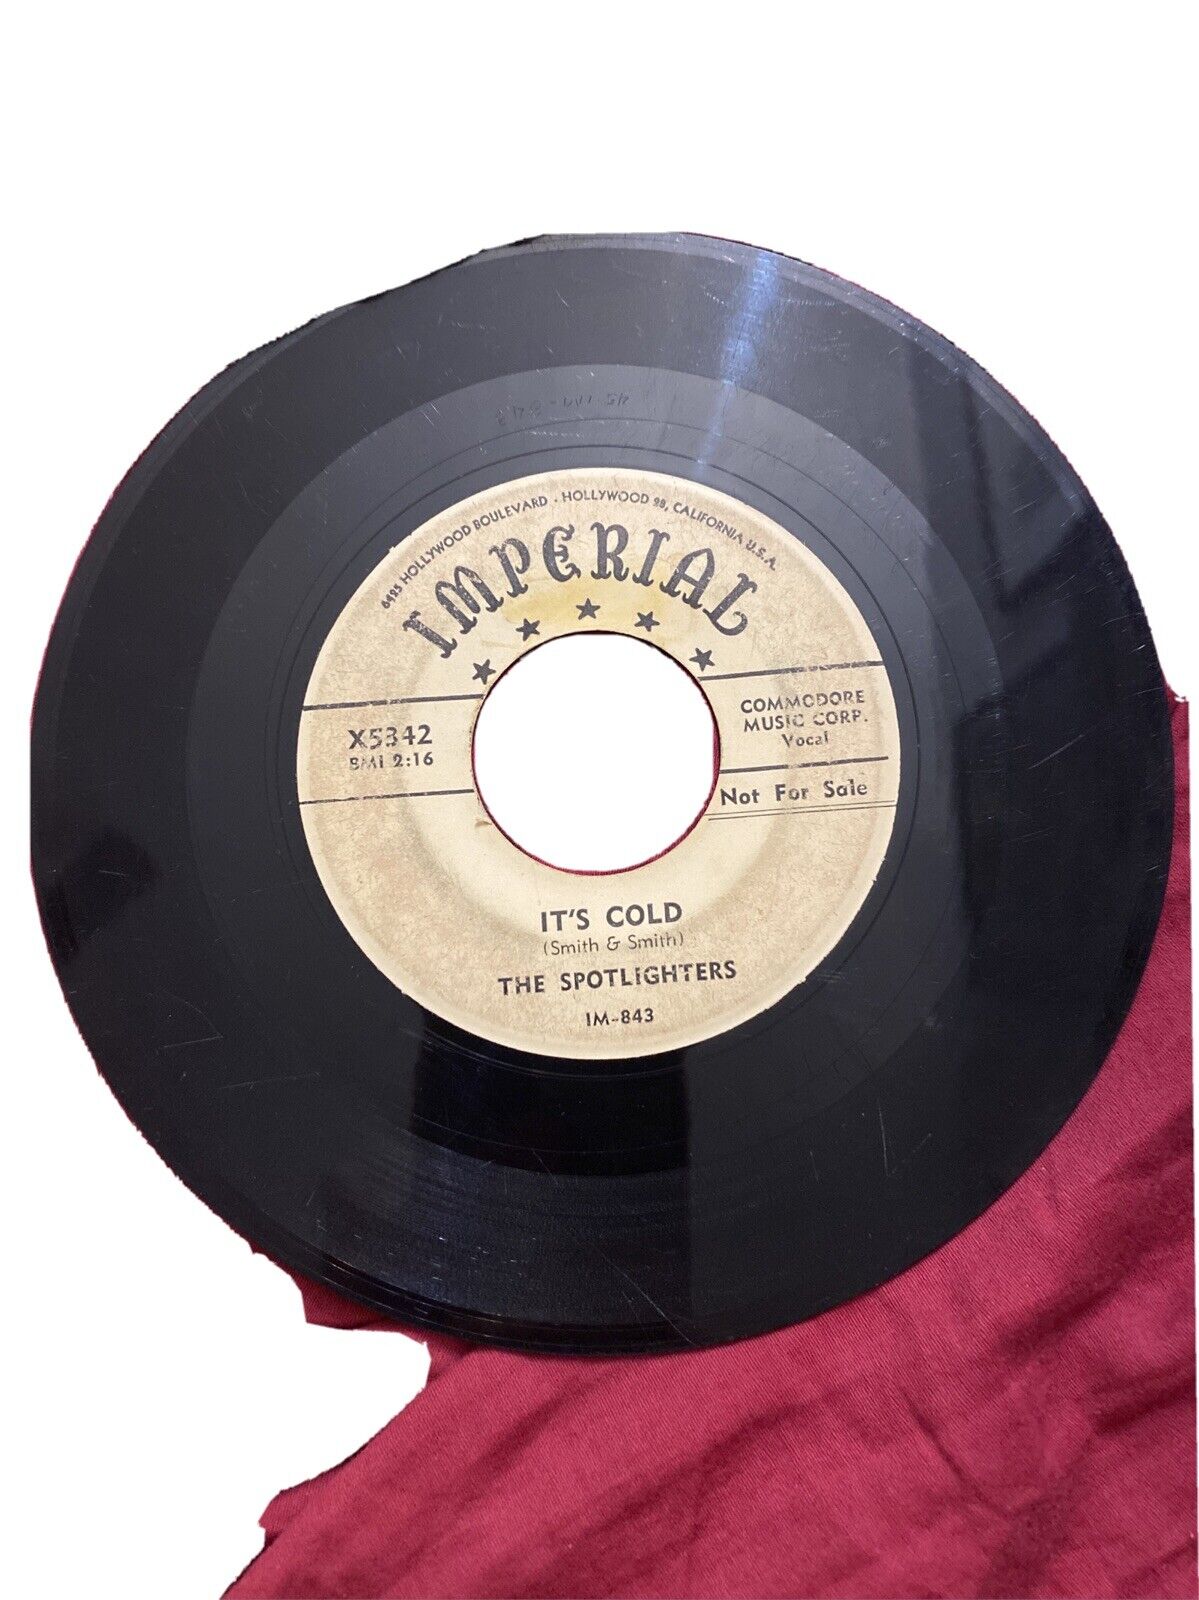 THE SPOTLIGHTERS IT’S COLD/BAM JINGLE JINGLE R&B SOUL 45 RPM RECORD